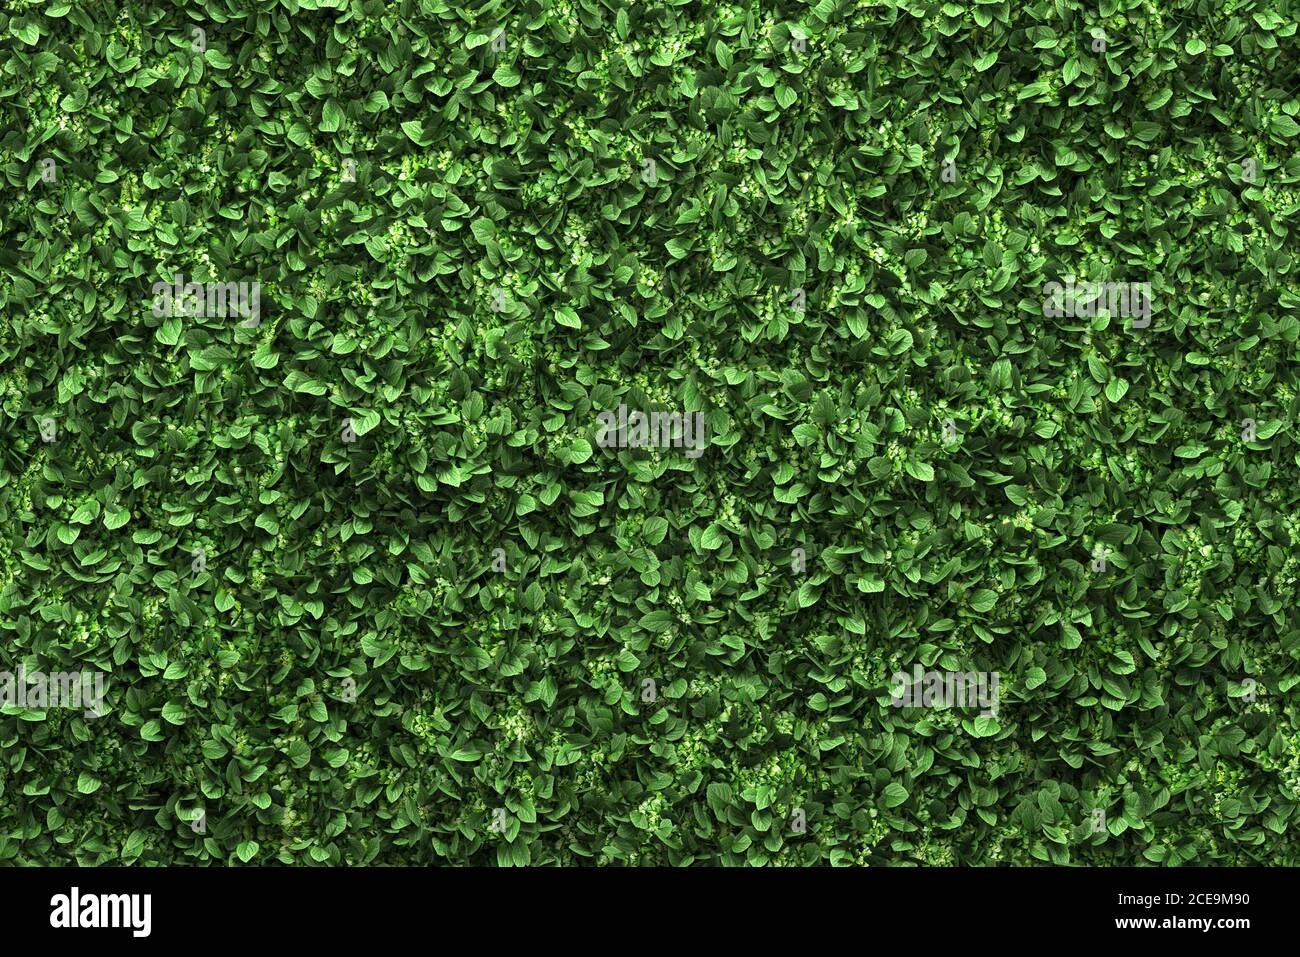 Caja verde con hojas verdes de fondo de cobertura Foto de stock